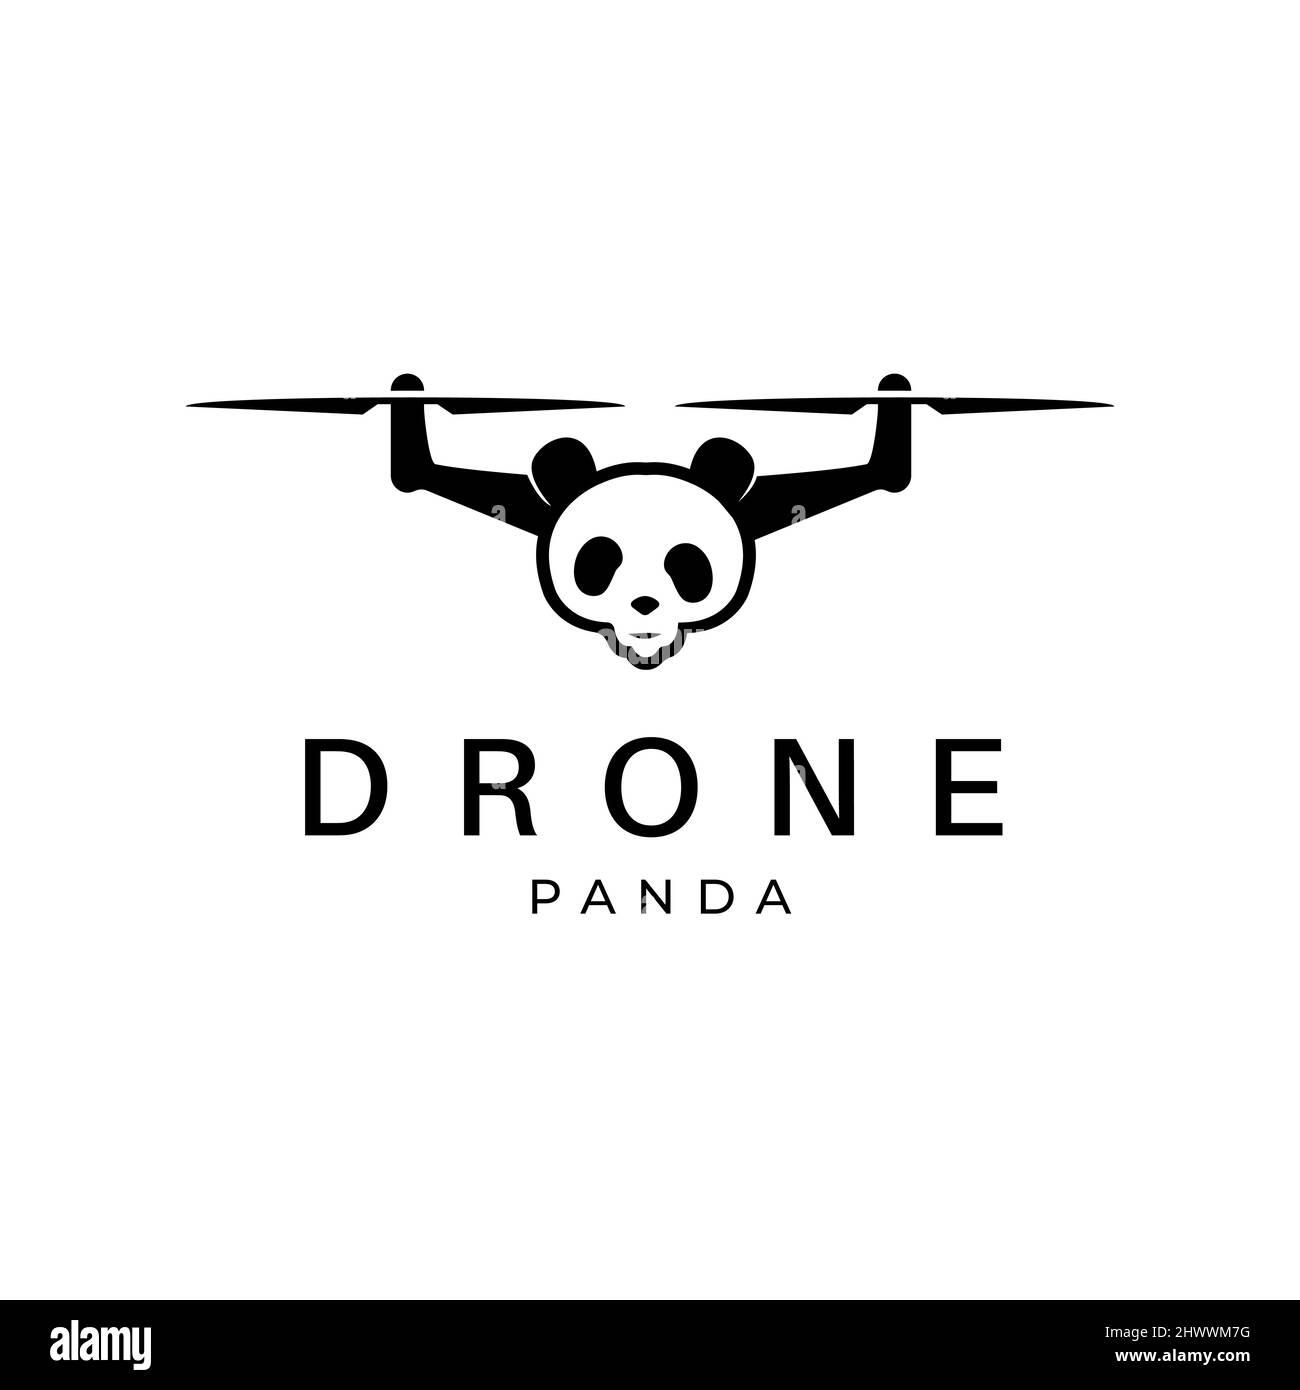 Disegno del logo del drone modello vettoriale immagine della testa del panda Illustrazione Vettoriale